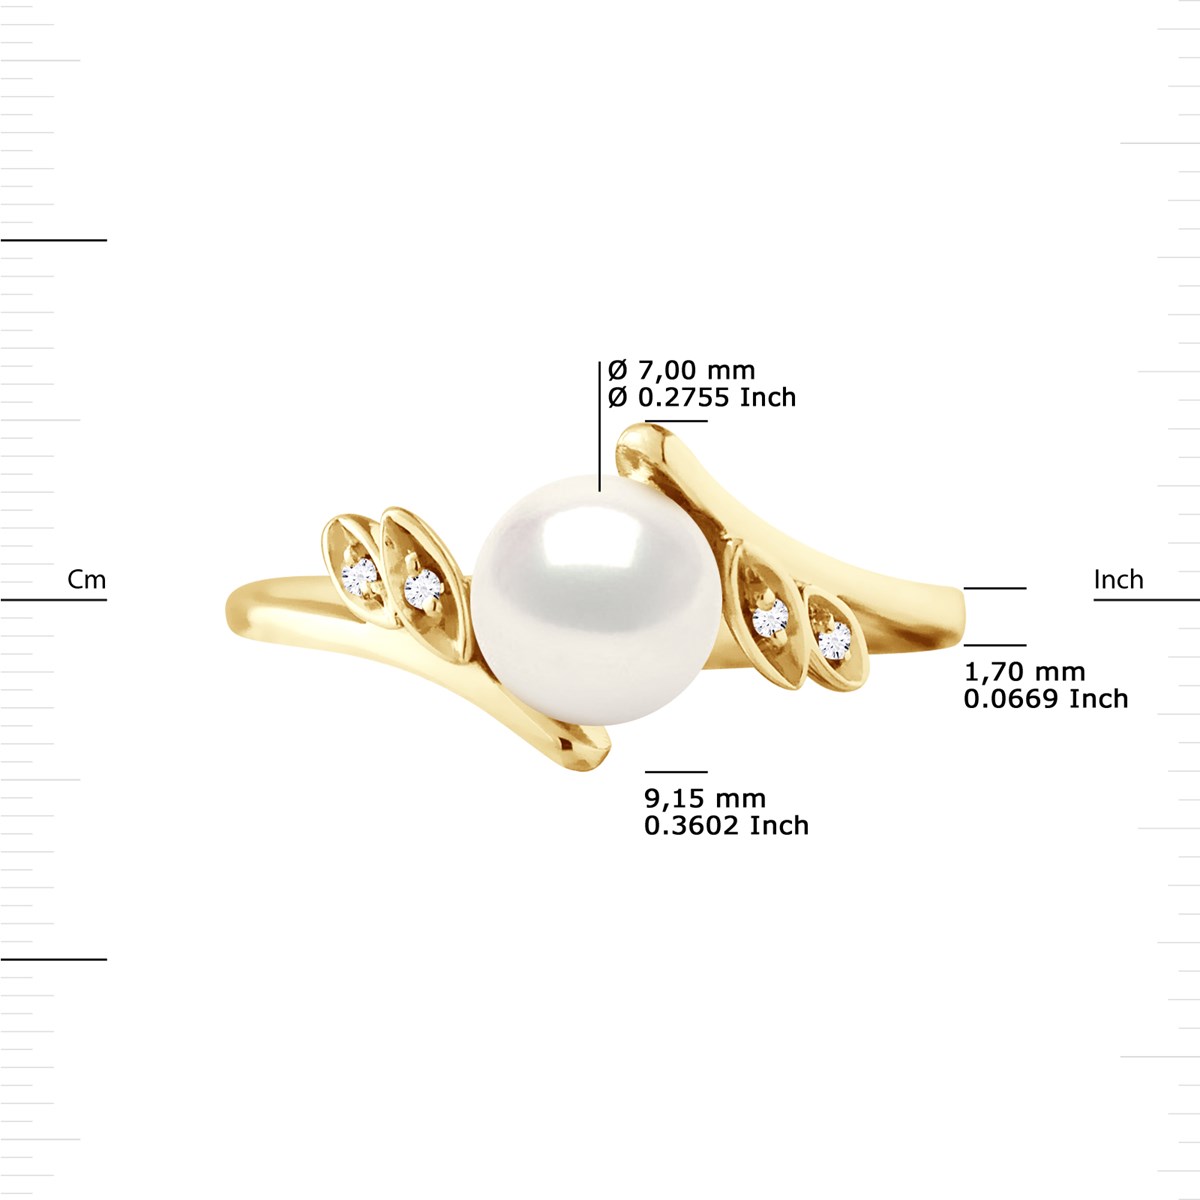 Bague Perle d'Eau Douce 7-8 mm et Diamants 0,020 Cts Joaillerie Or Jaune - vue 3